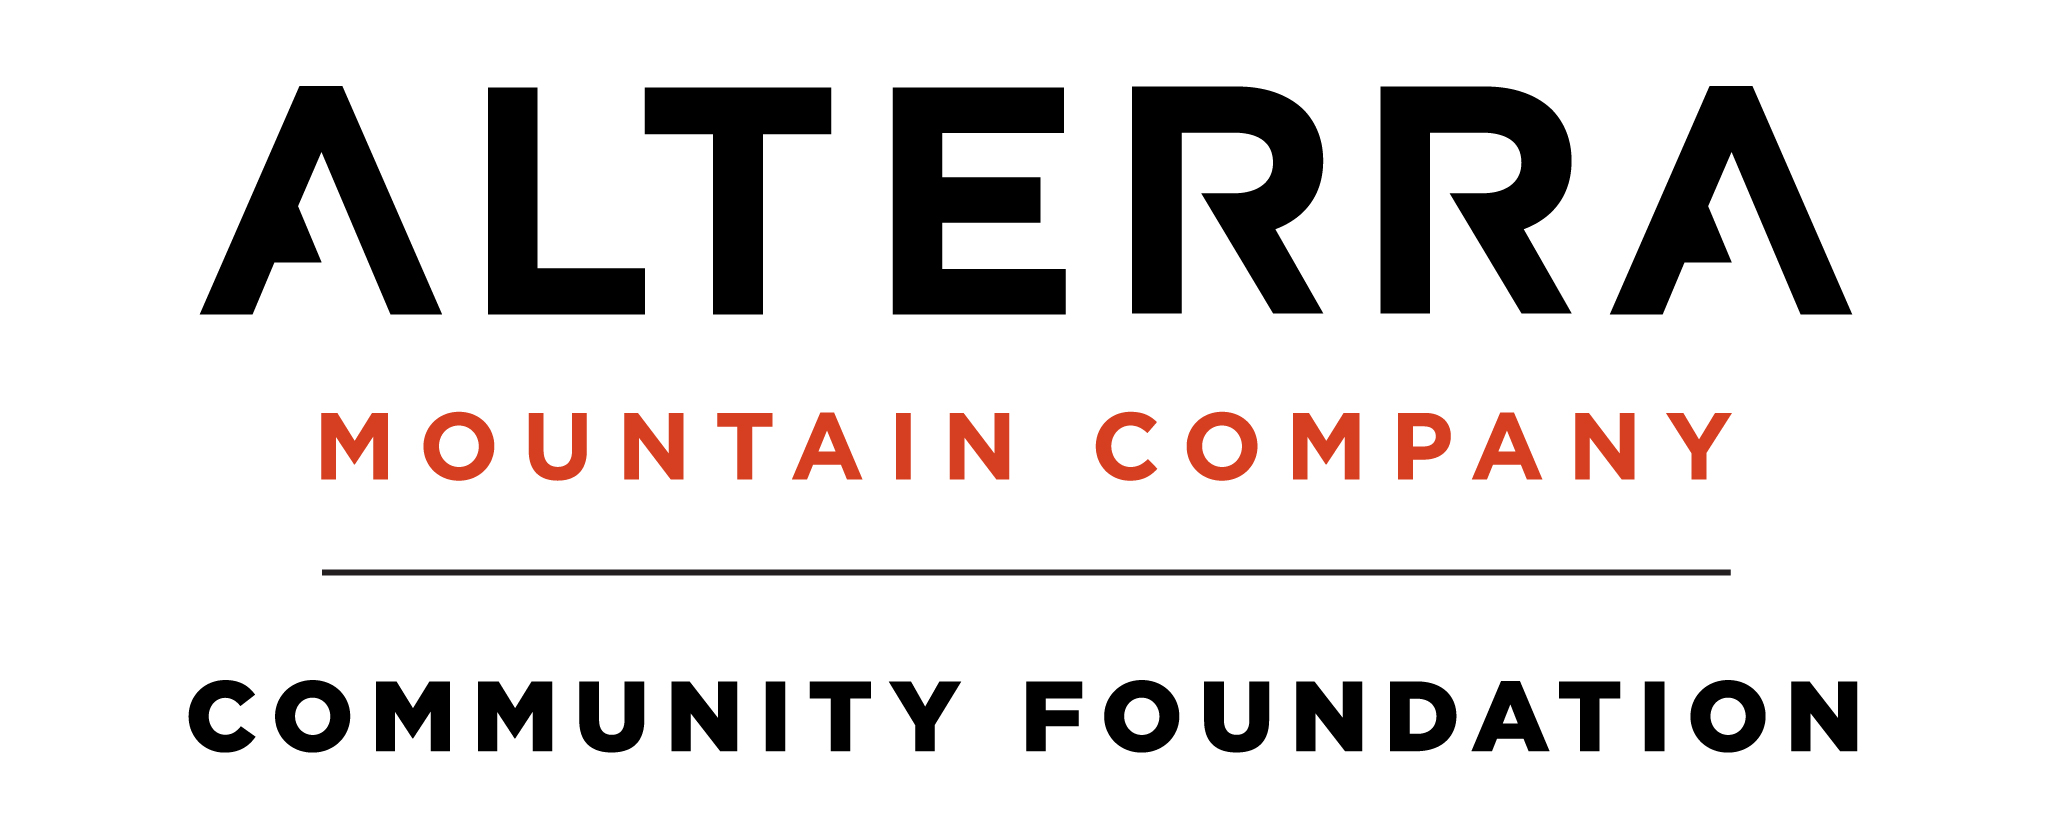 Alterra Mountain Company Community Foundation logo